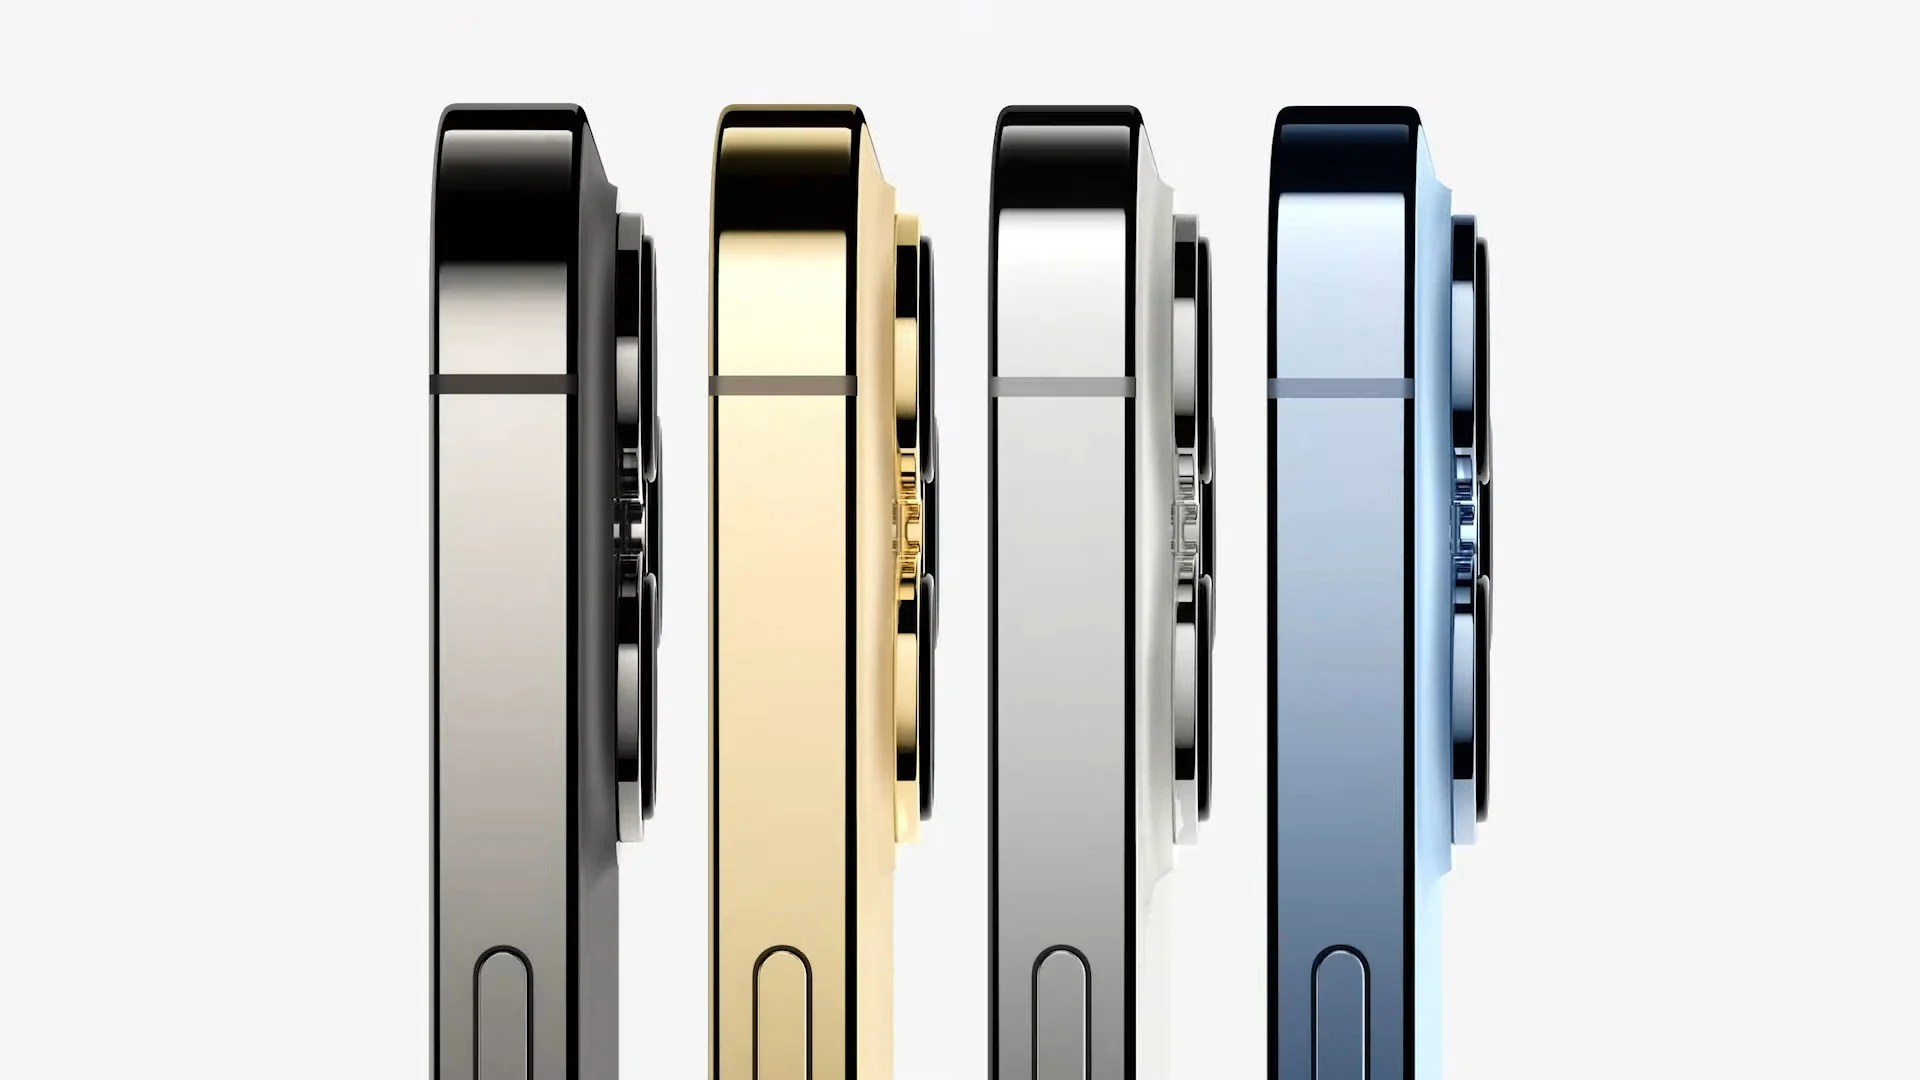 Keynote Apple : le résumé des annonces (iPhone 13, Watch Series 7, nouveaux iPad…)